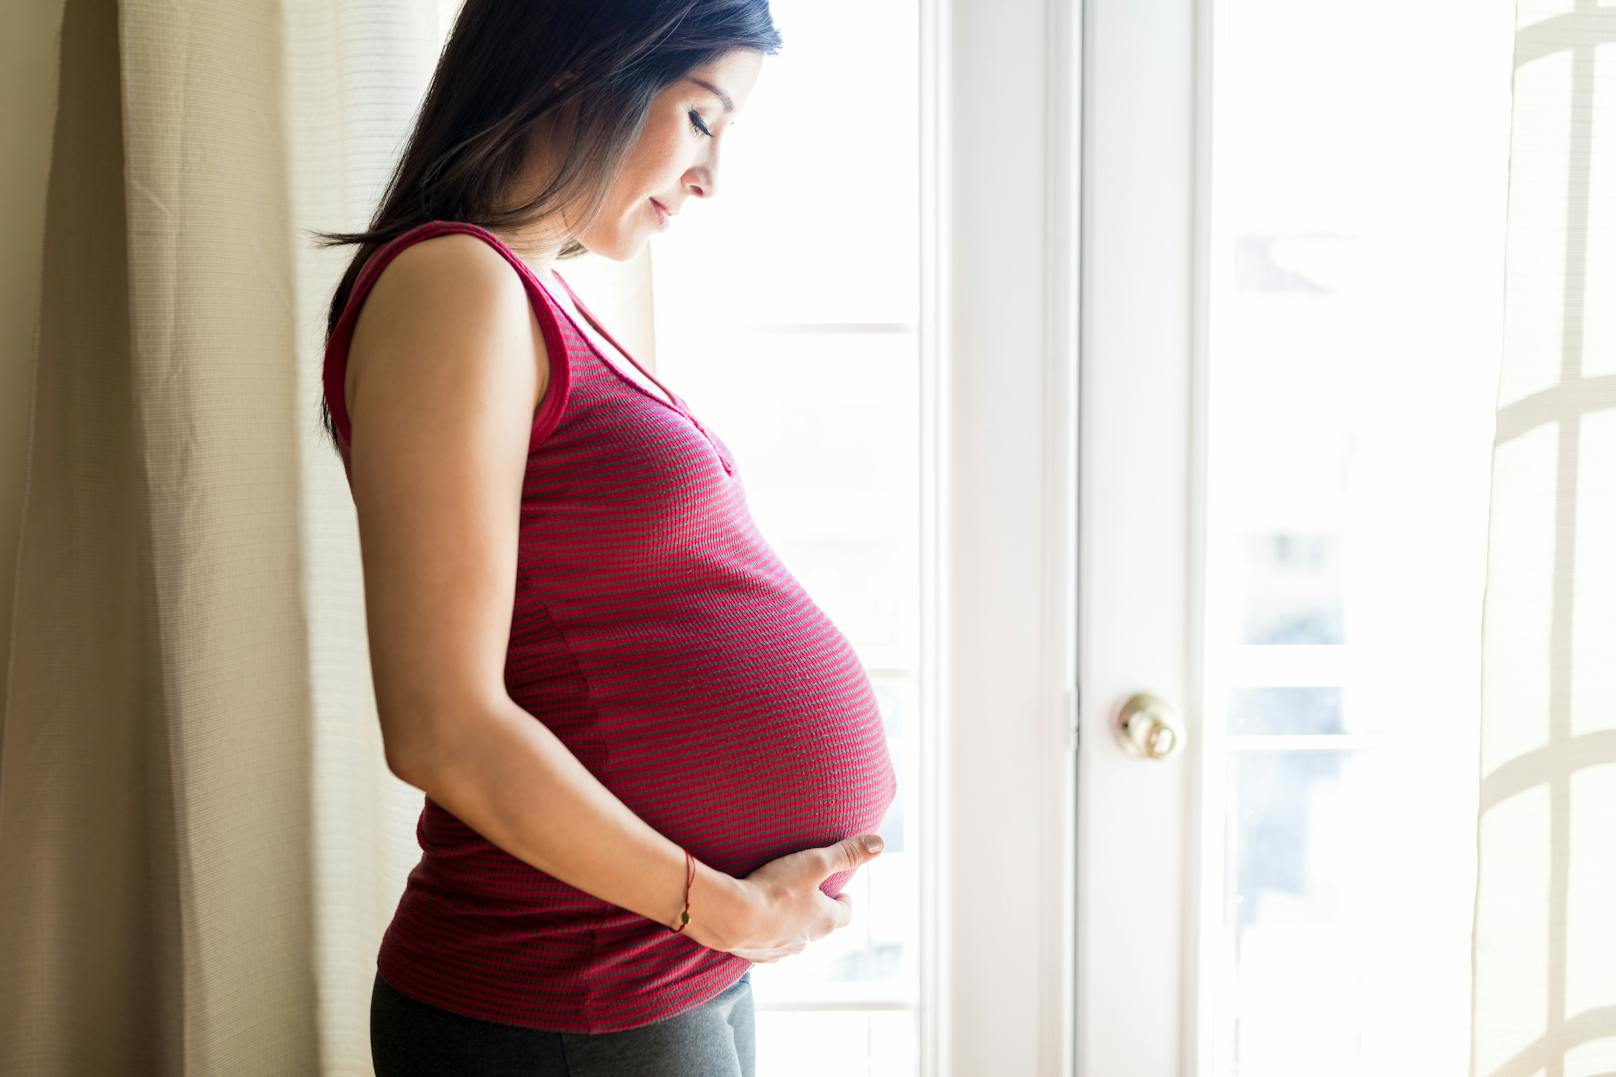 Schwangere mit Kundenkontakt sind&nbsp;einem erhöhten Risiko einer Infektion ausgesetzt.